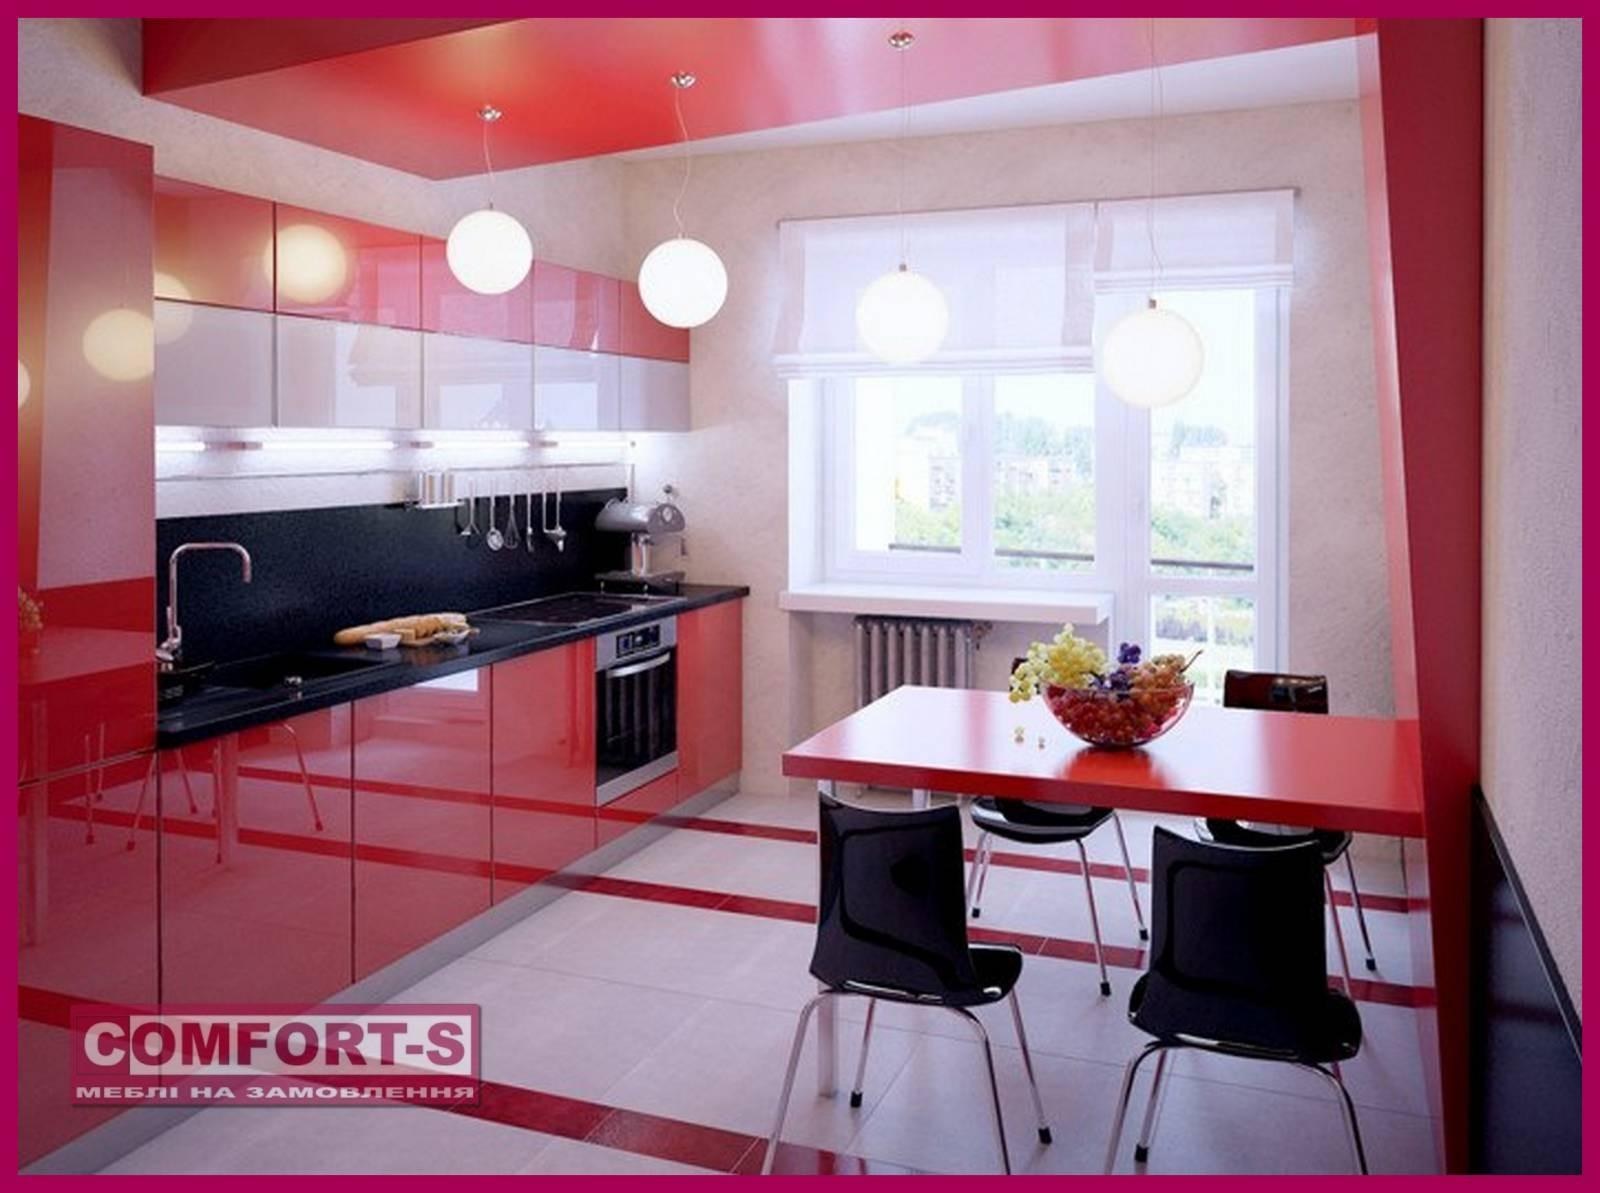 Красивые комната кухня. Красивые кухни. Красные кухни. Кухня в Красном цвете. Красно-черная кухня в интерьере.